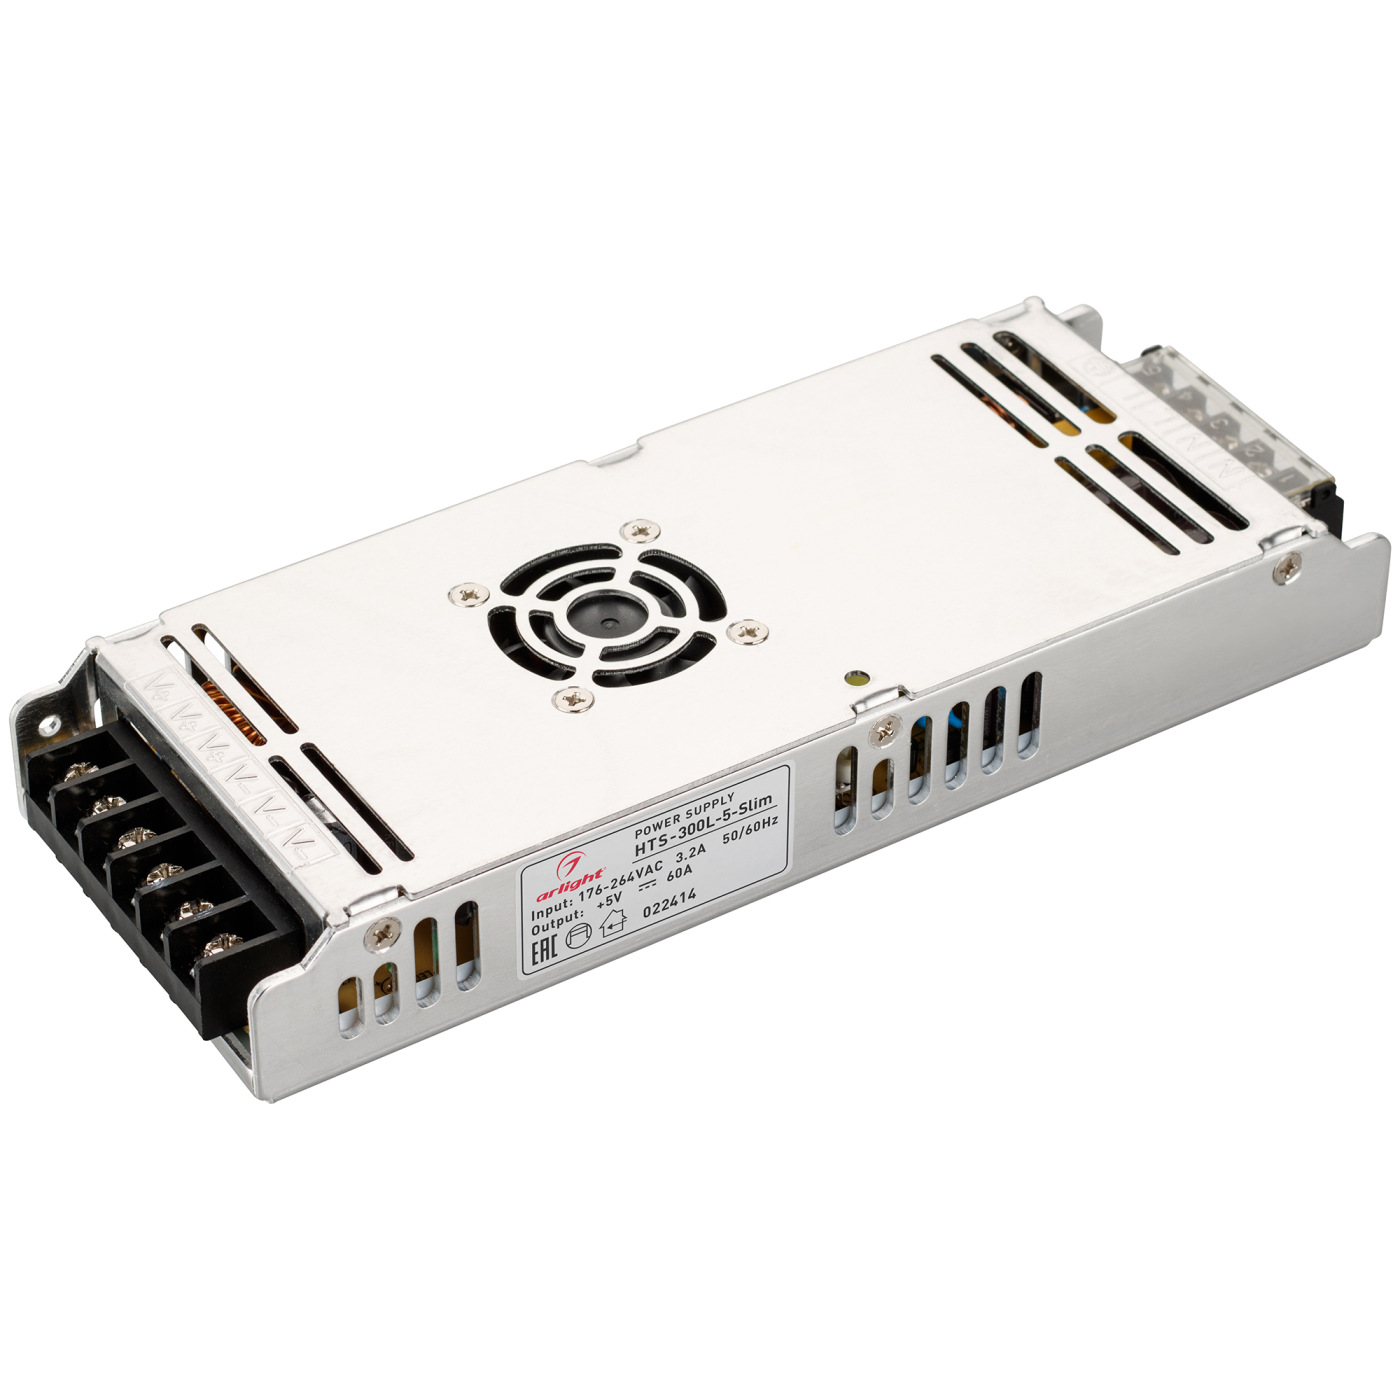 Блок питания HTS-300L-5-Slim (5V, 60A, 300W) (Arlight, IP20 Сетка, 3 года) блок питания ars 300 24 lf 24v 12 5a 300w arlight ip20 сетка 3 года